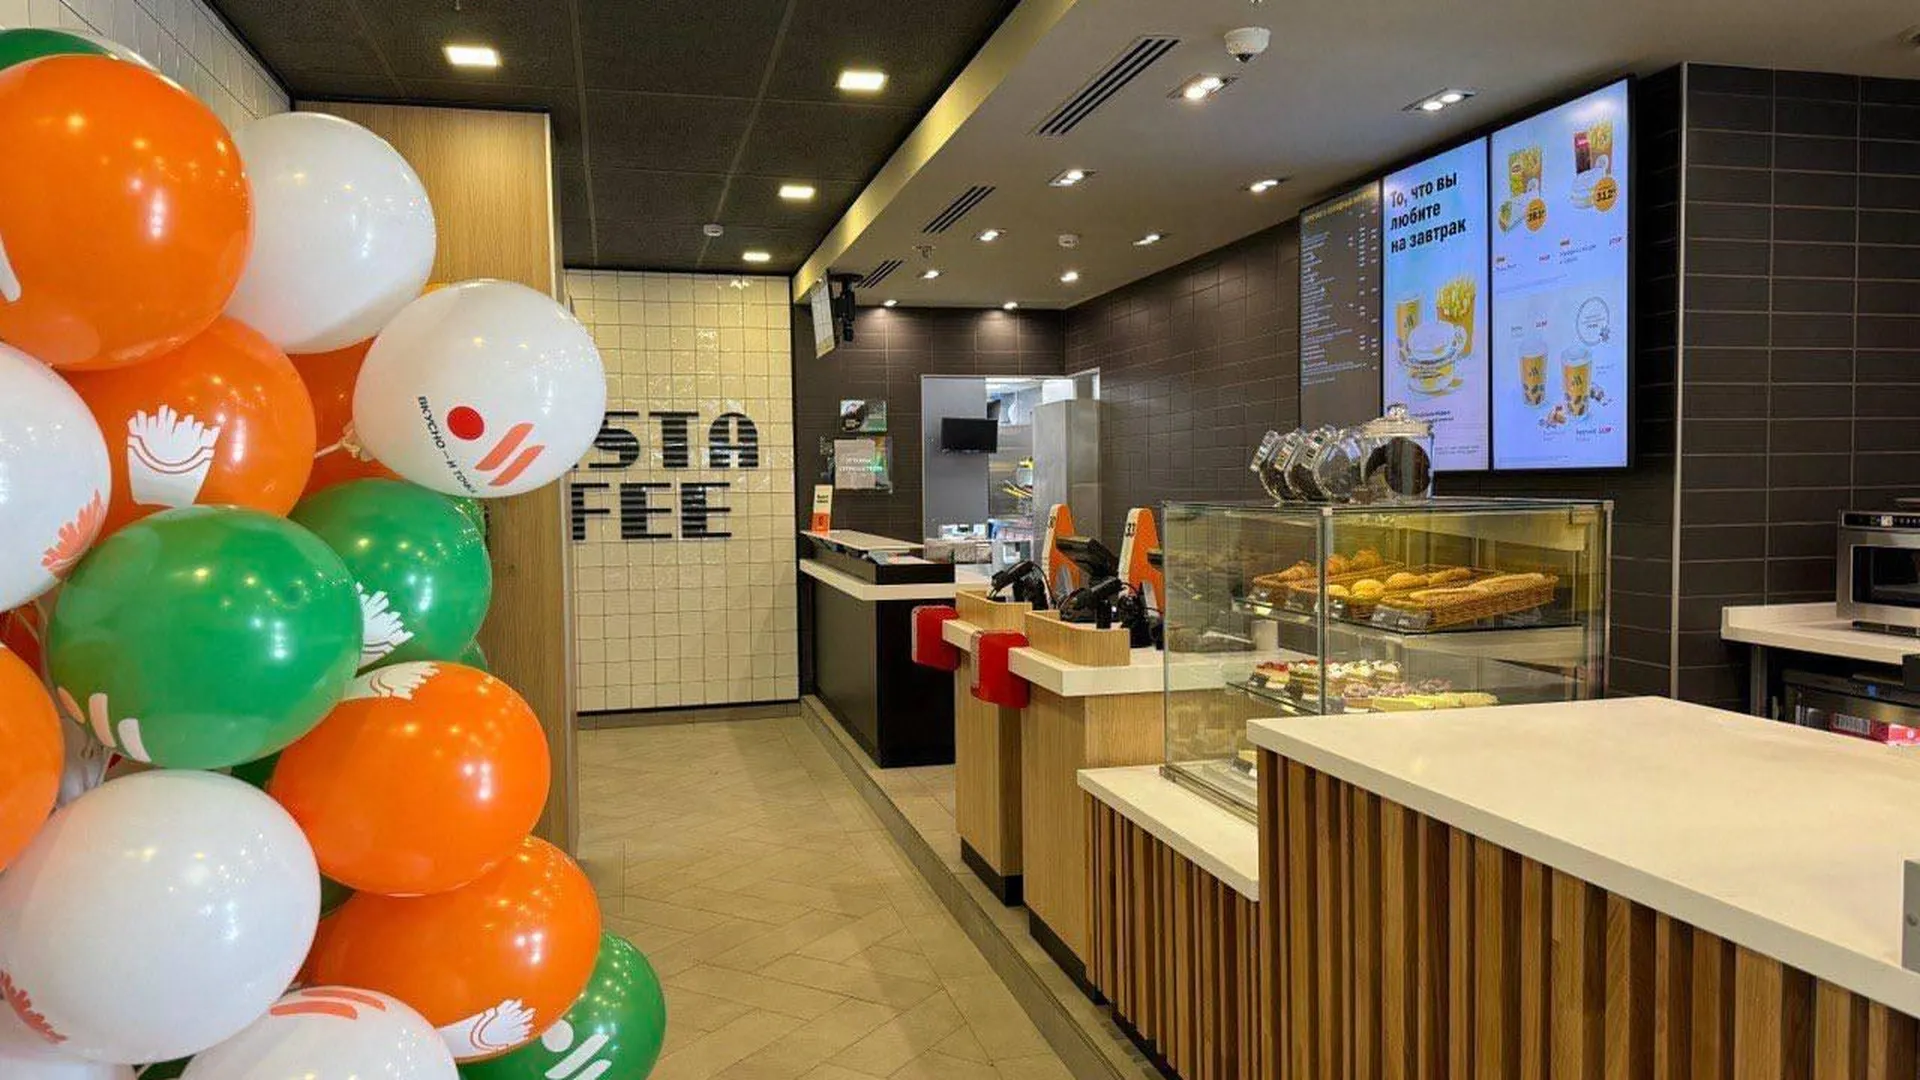 Новый ресторан популярной сети быстрого питания открылся в Московской области